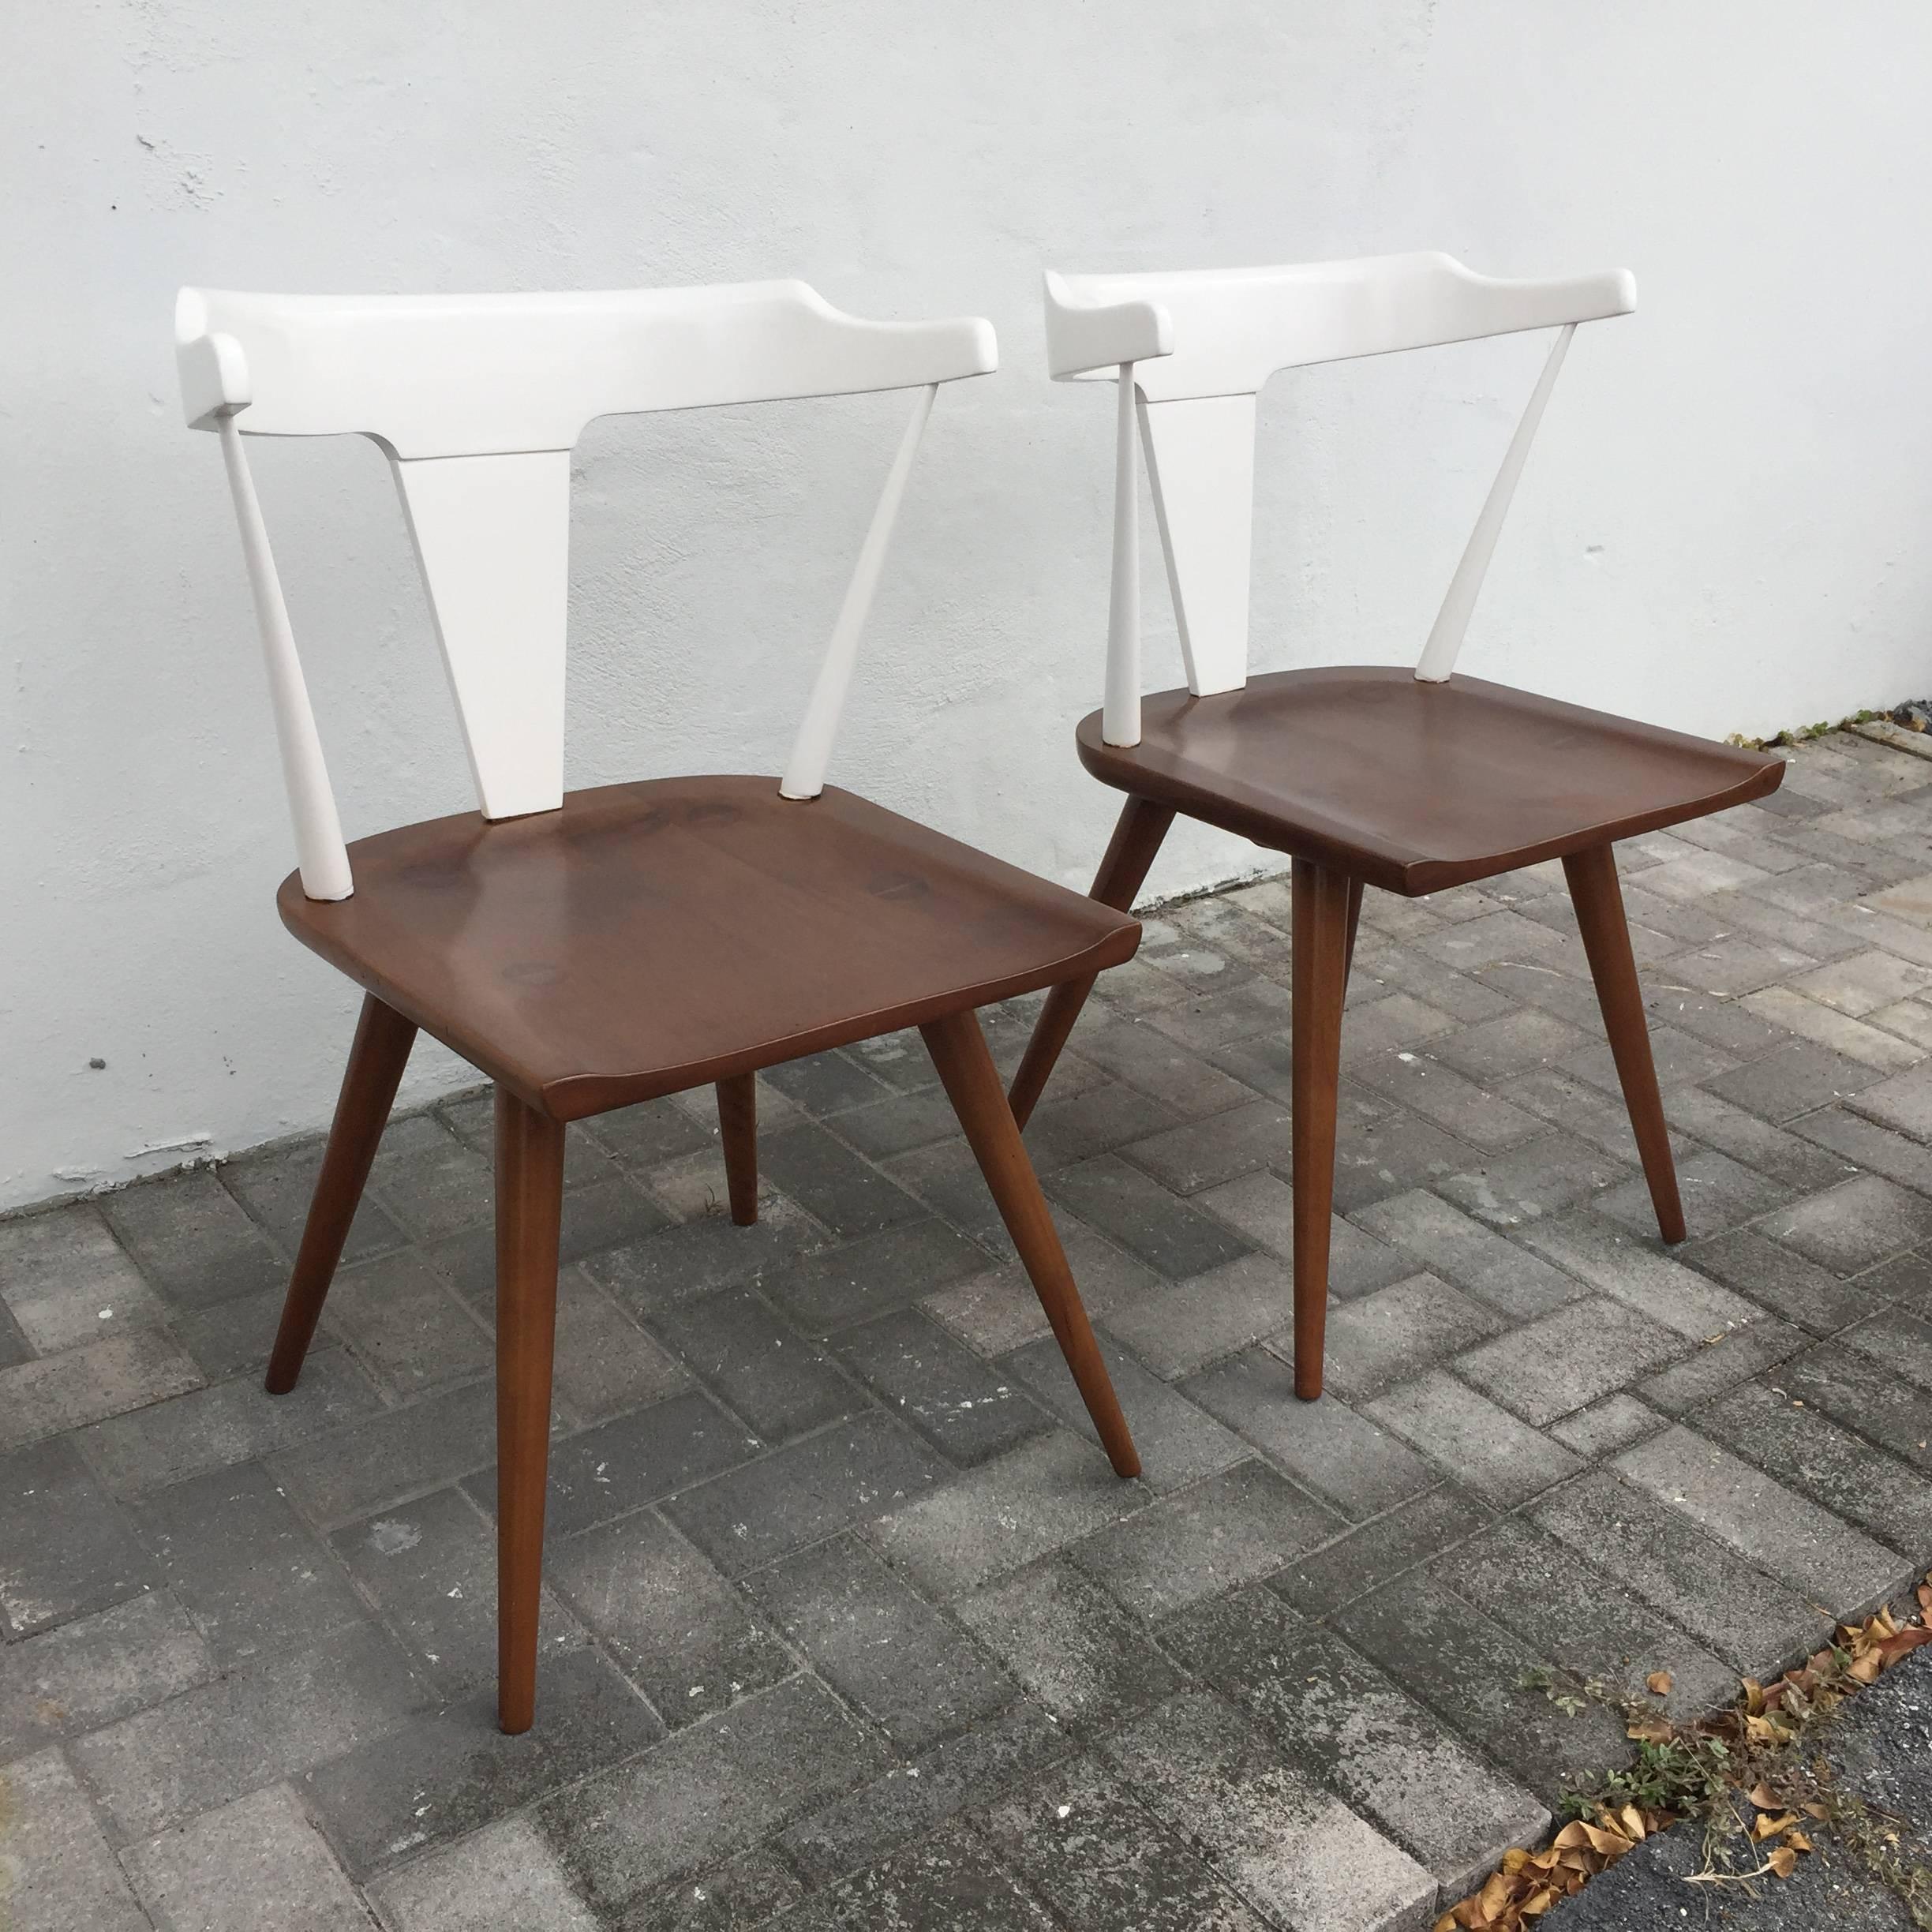 Magnifiquement laqué en deux tons, blanc et bois naturel en teinte brune. Nous disposons d'une deuxième paire de chaises McCobb similaires qui peuvent constituer un bel ensemble de quatre.